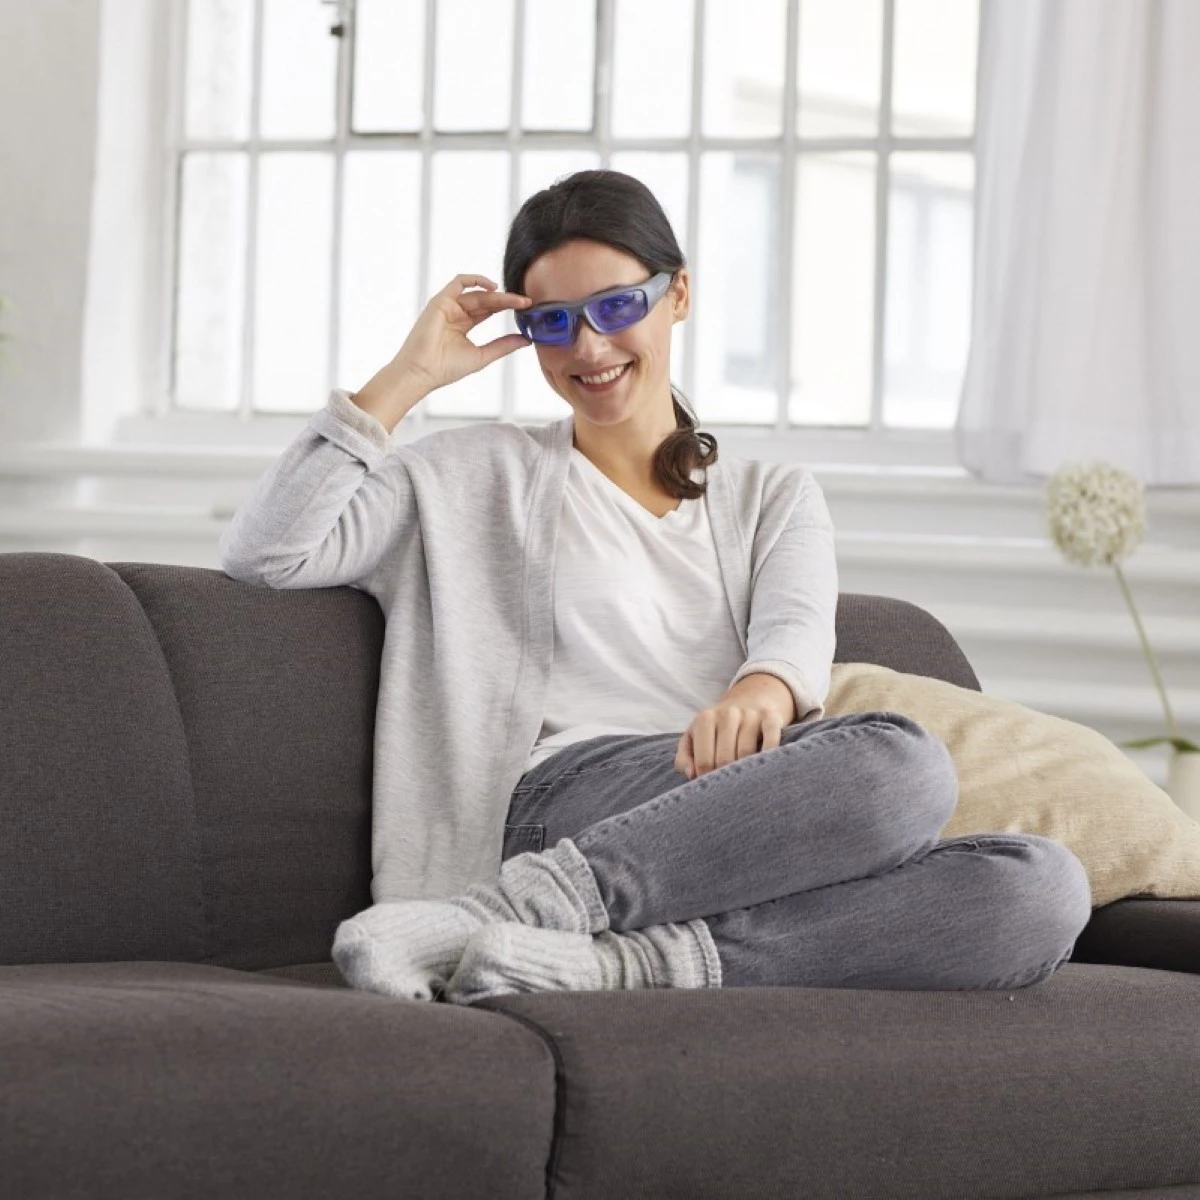 Ayolite - Blaulichttherapie Brille für mehr Wachheit und weniger Müdigkeit